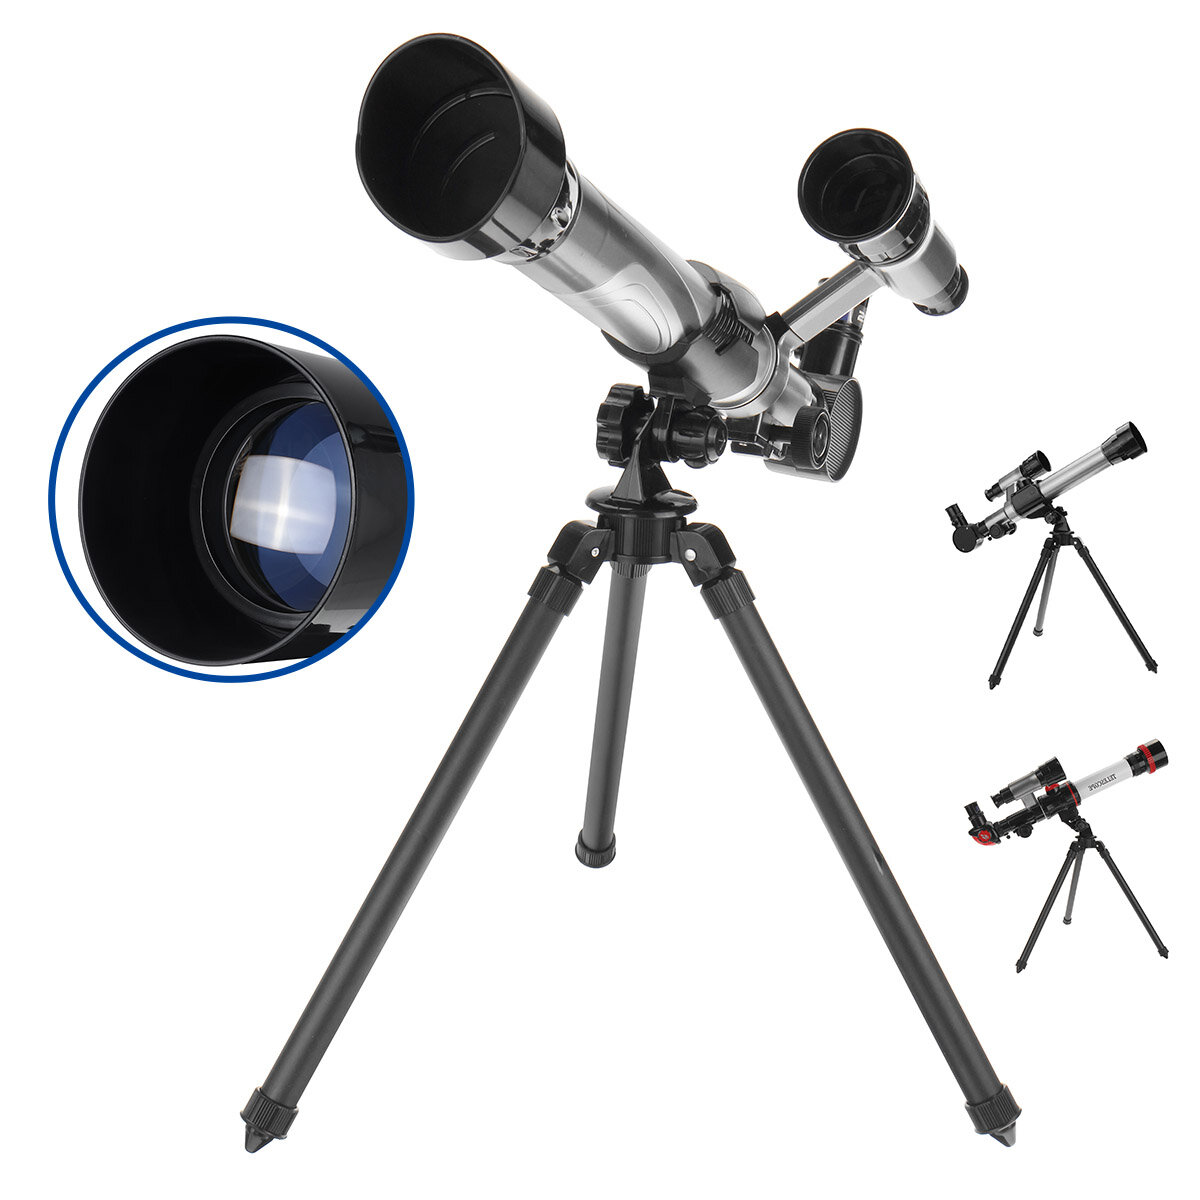 Télescope réfracteur optique HD 30-40X pour adultes, enfants et débutants avec trépied